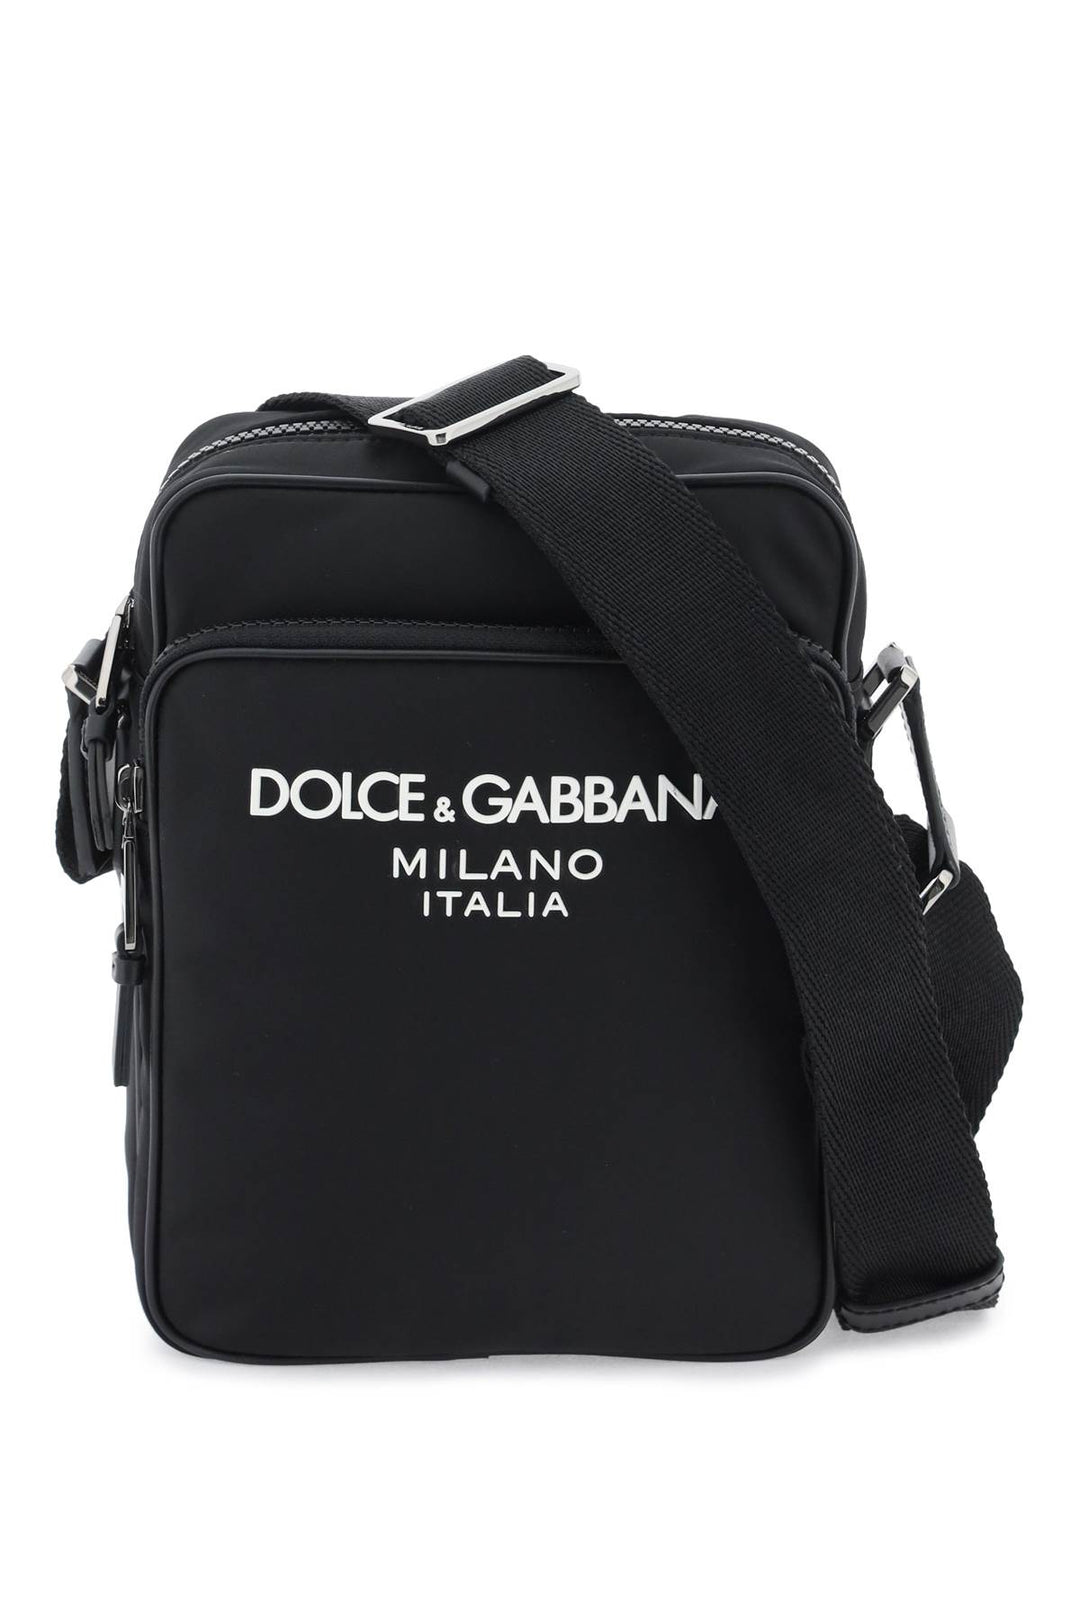 Dolce & Gabbana Nylon Crossbody Bag   Nero